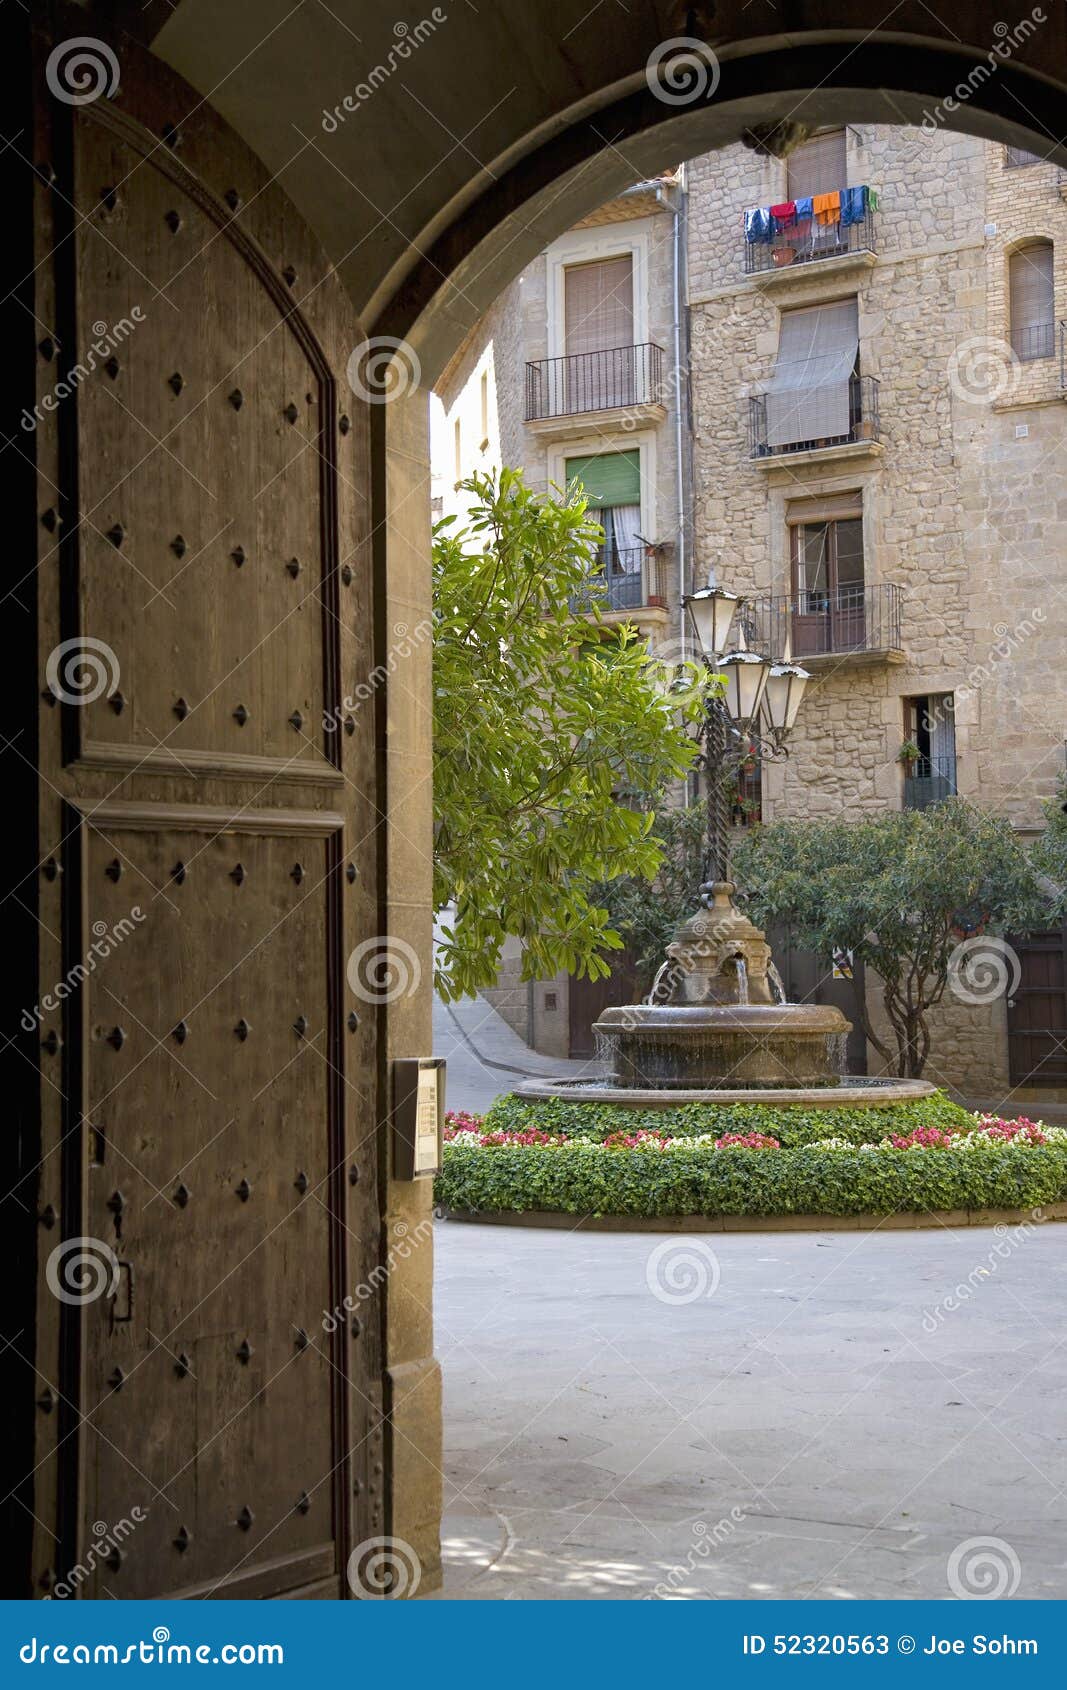 arch doorway with view of courtyard in solsona, cataluna, spain